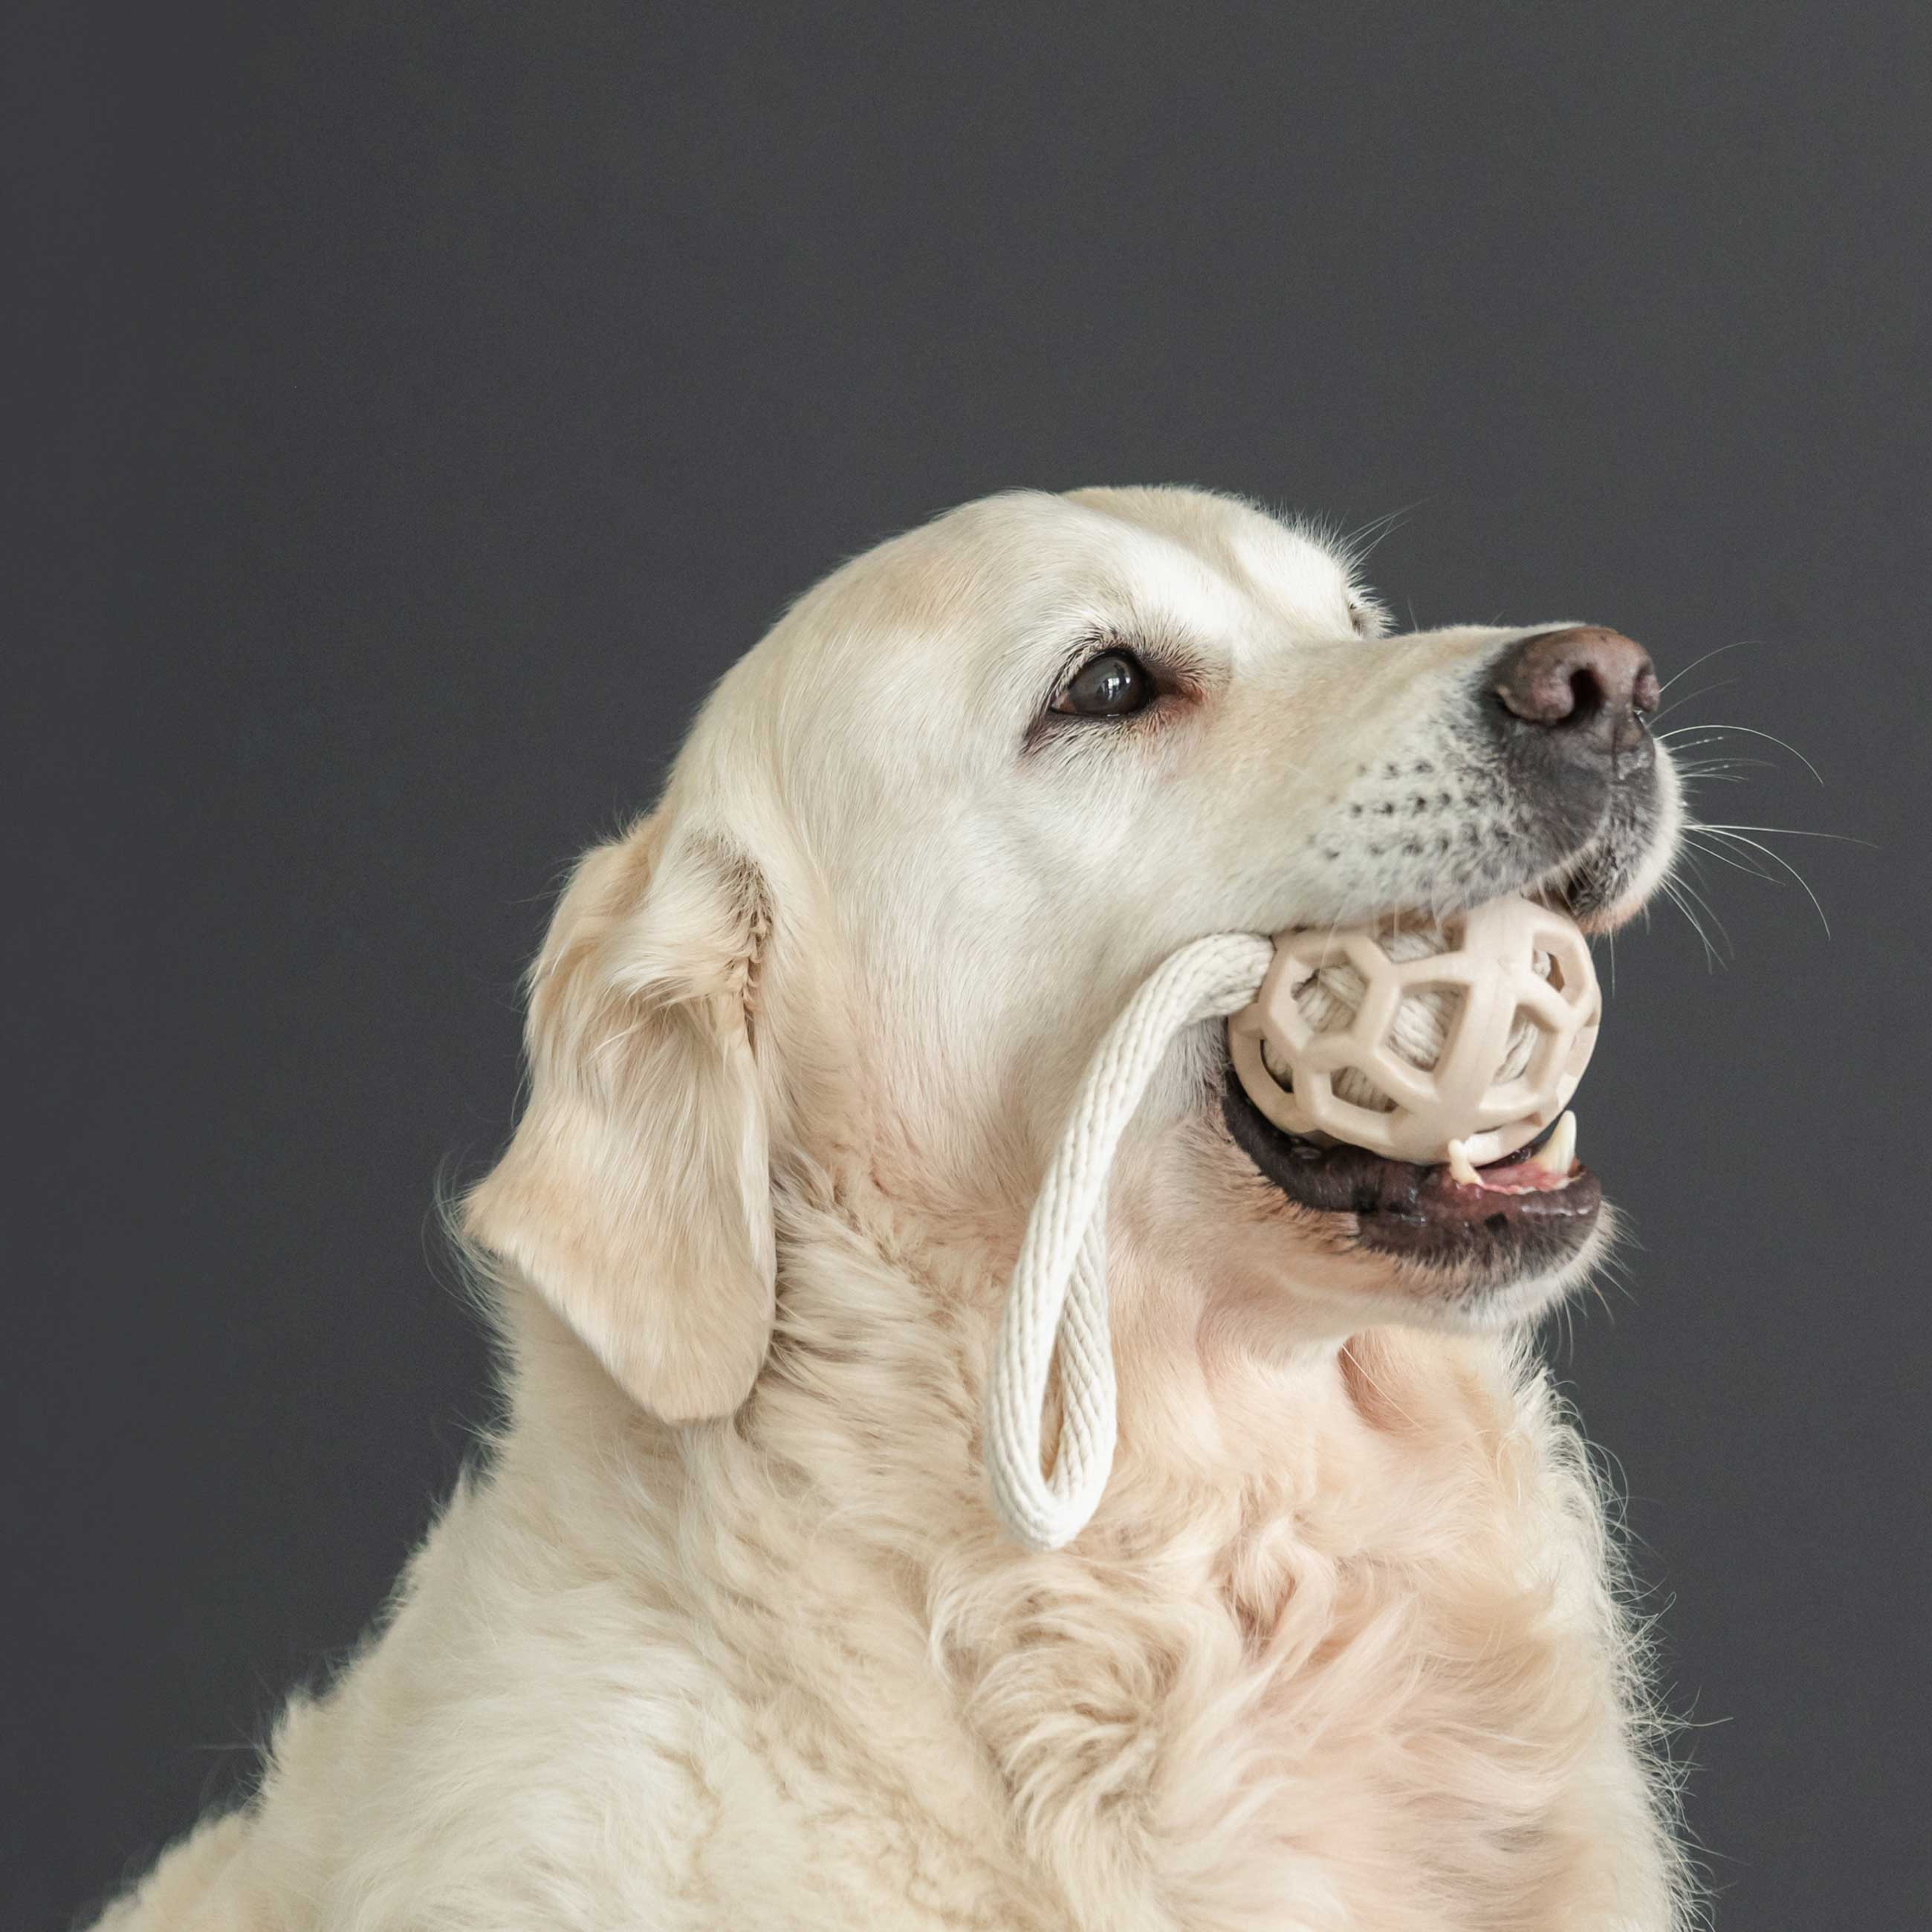 Игрушка для собак, 7х21 см, резина/хлопок, бежевая, Шар на петле, Playful pet изображение № 2